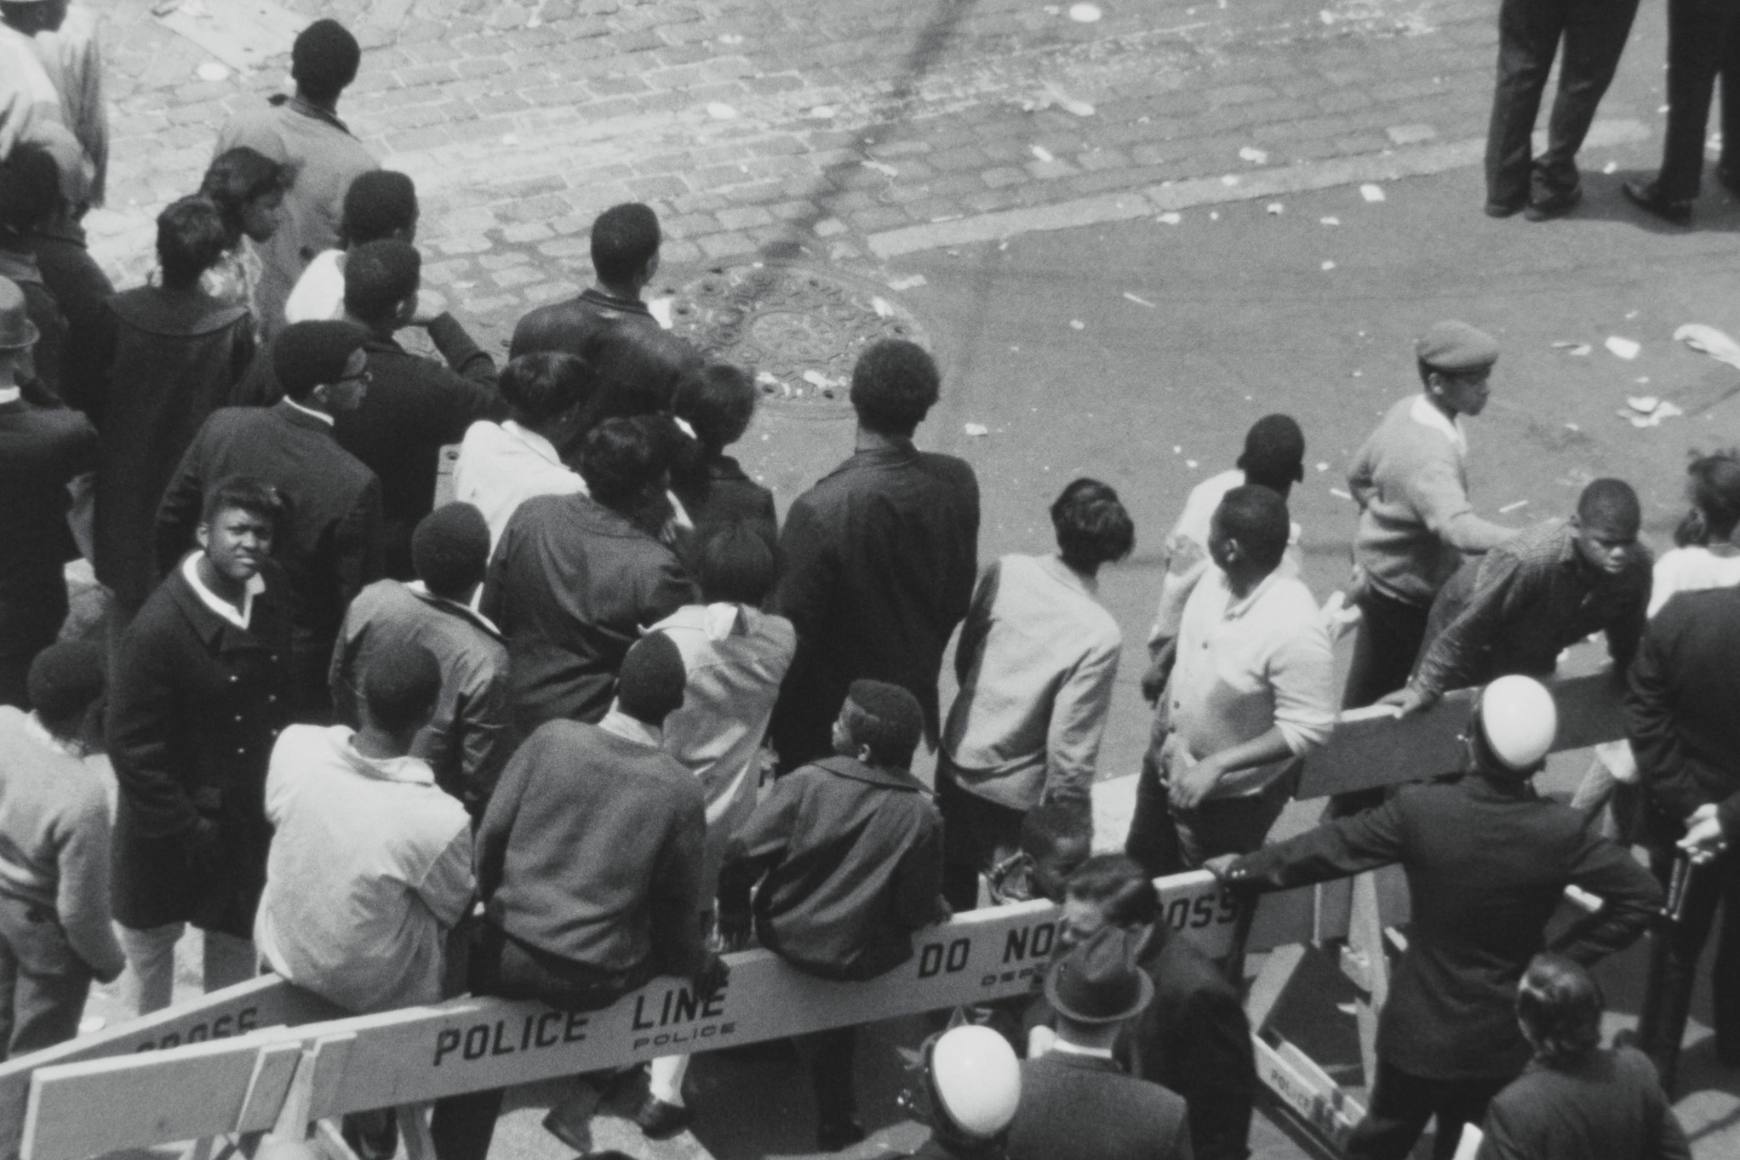 Une vue plongeante en noir et blanc d’un groupe de personnes se tient dans la rue. Des barricades de police délimitent l'espace.